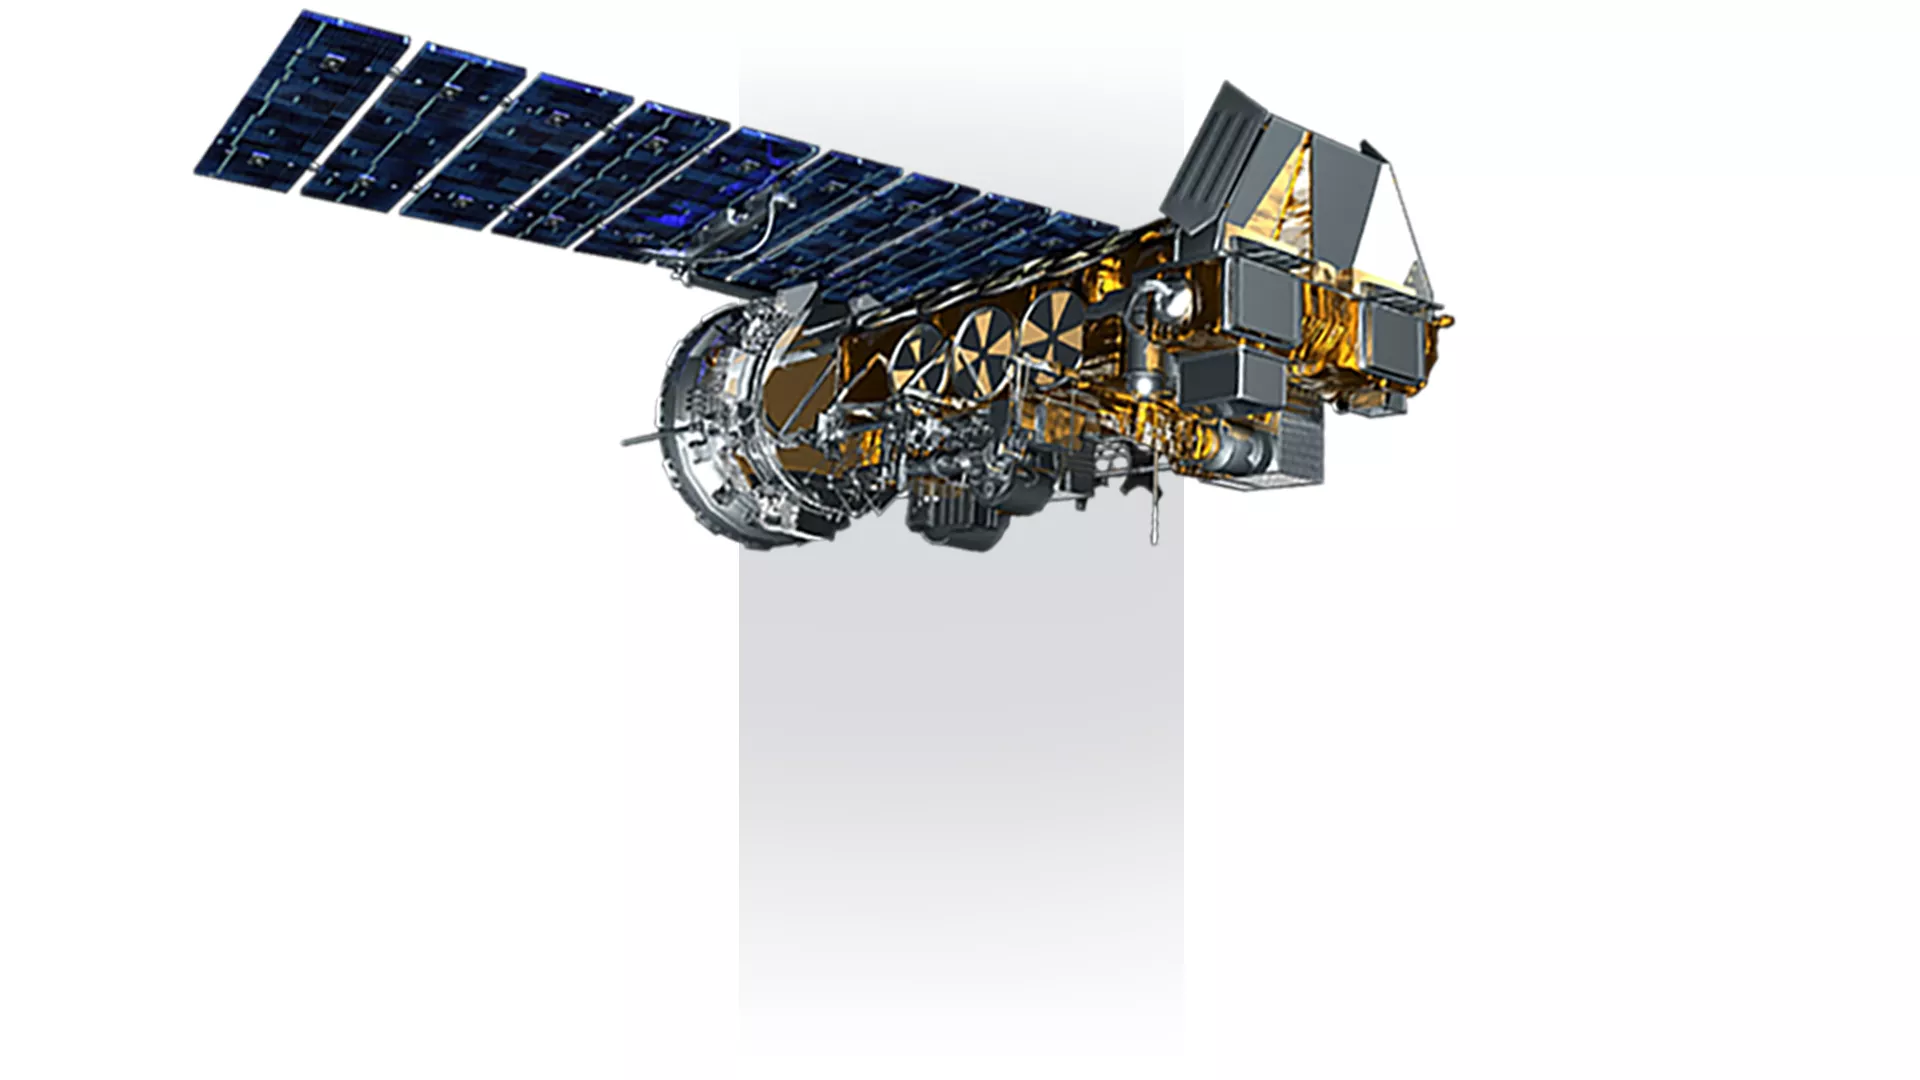 NOAA-15 satellite